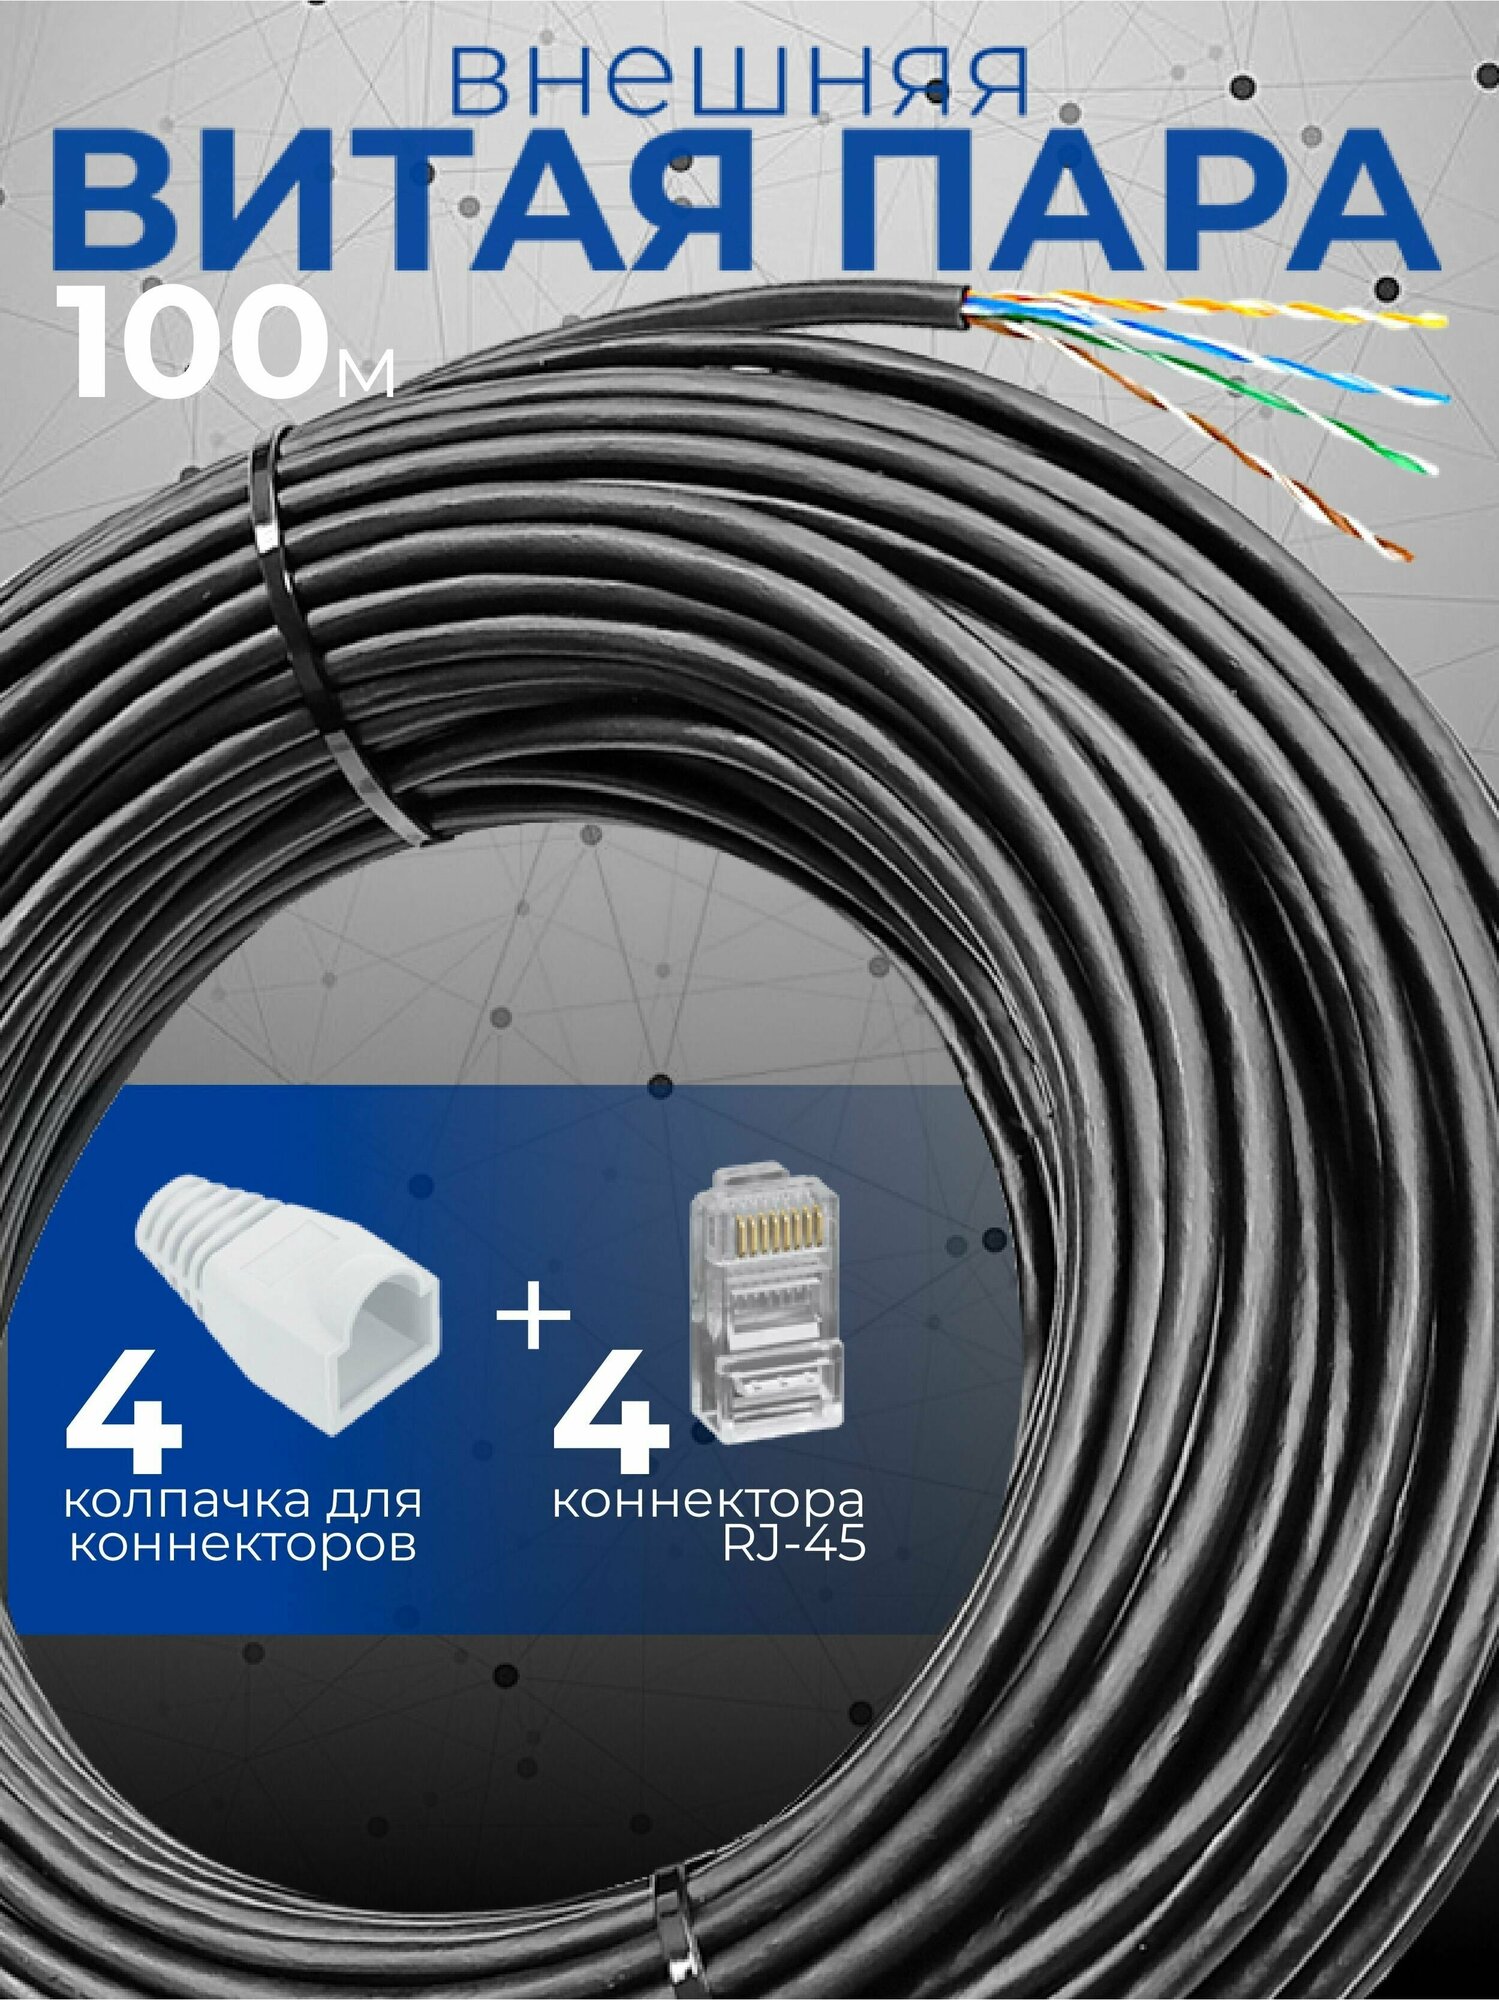 Внешний интернет кабель (витая пара) 100м уличный для наружной прокладки Cu (чистая медь класс А) U/UTP PE 4 пары (8 жил) Cat.5е 24AWG outdoor 100м